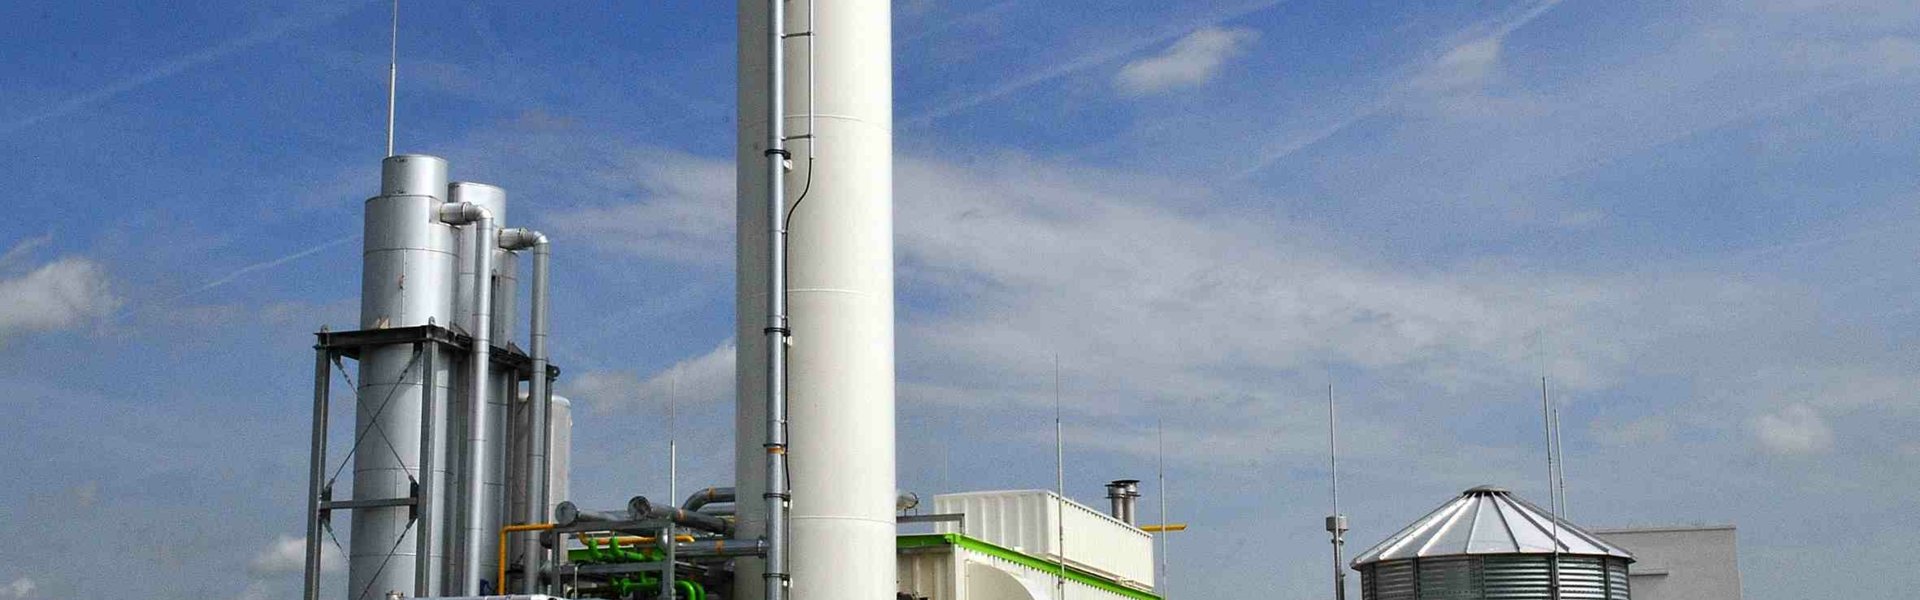 Biogasanlage der Erdgas Südwest in Riedlingen